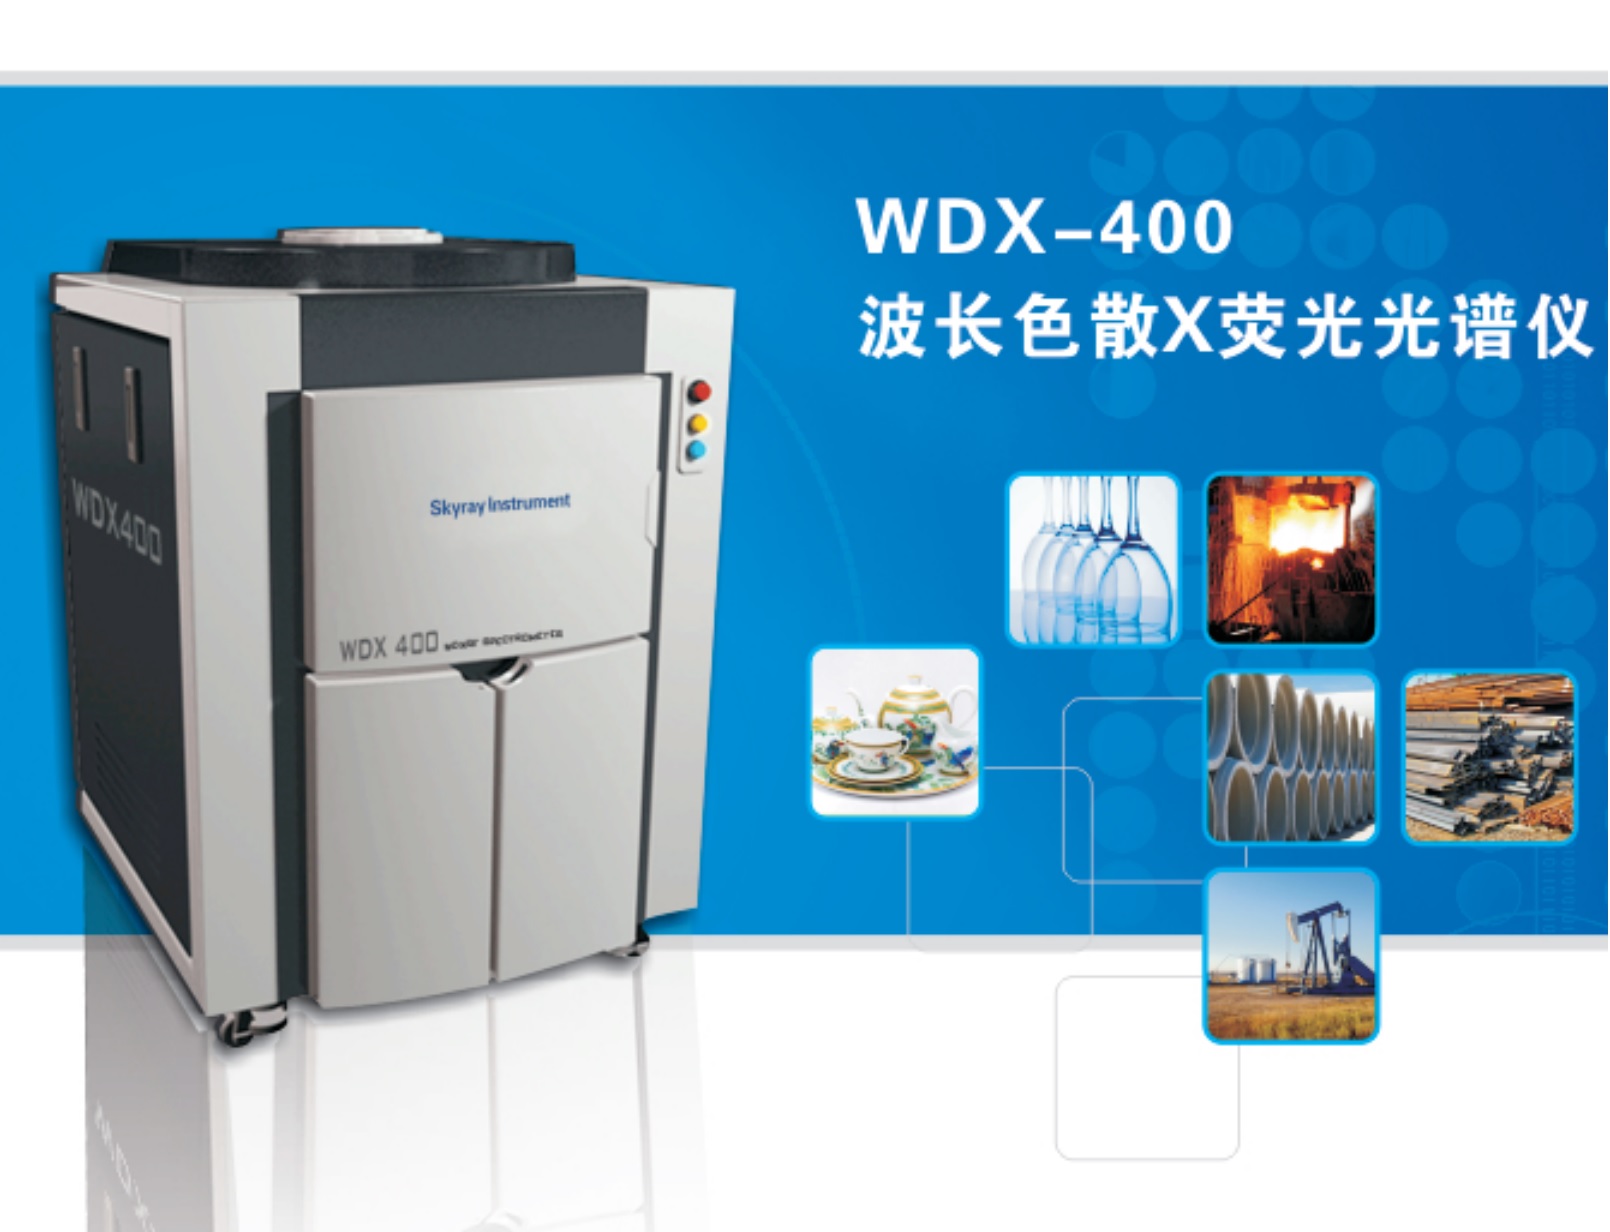 江蘇天瑞儀器股份有限公司-天瑞儀器WDX400